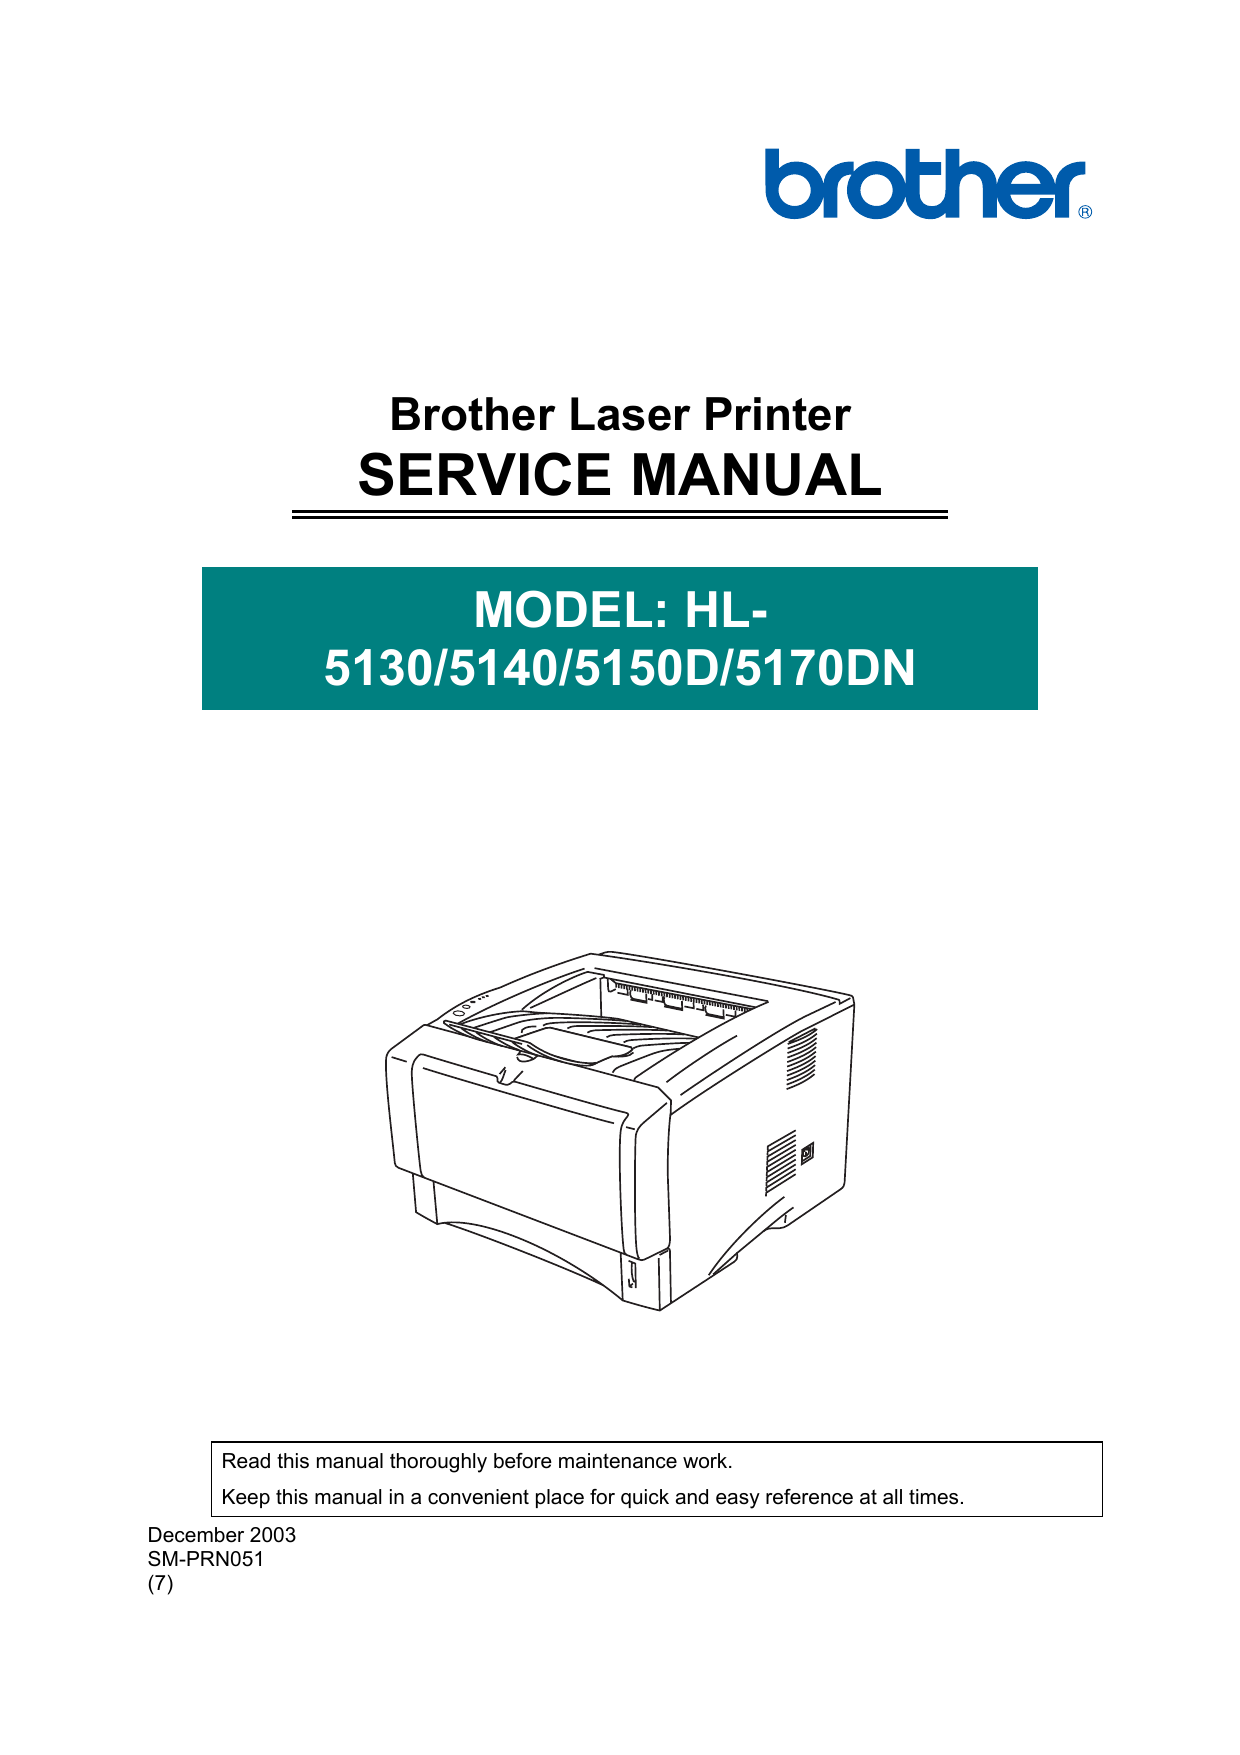 Brother HL-5130, HL-5140, HL-5150D laser printer service guide Preview image 6